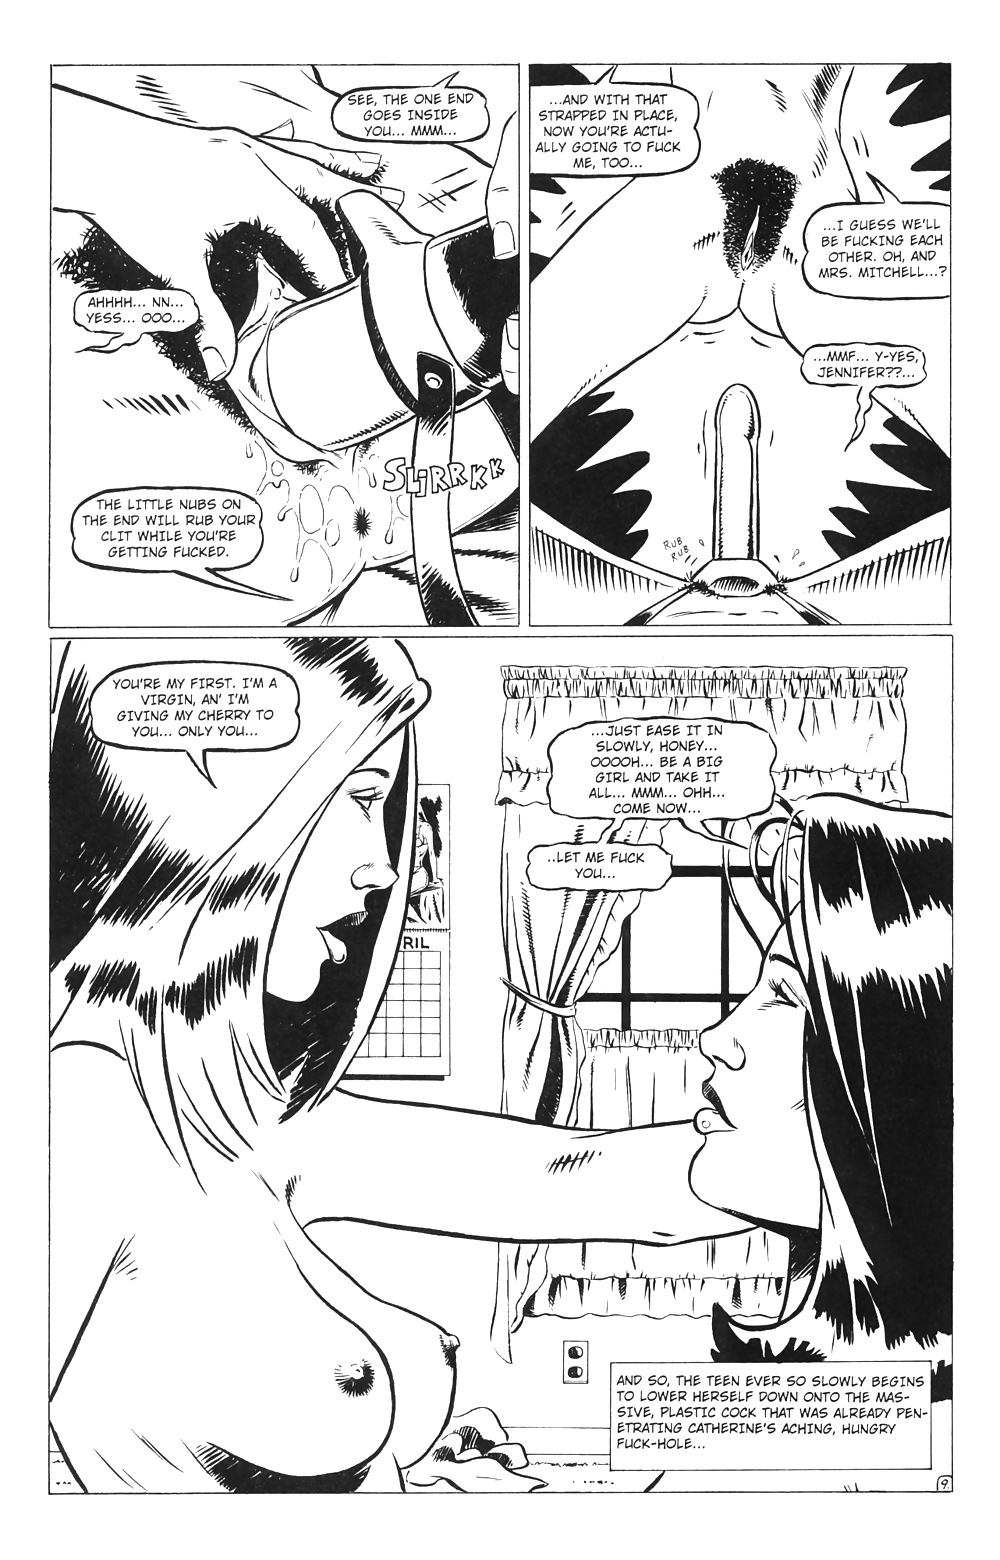 Ménagères En Jeu # 02 - Comics Eros Par Rebecca - Octobre 2000 #25521577